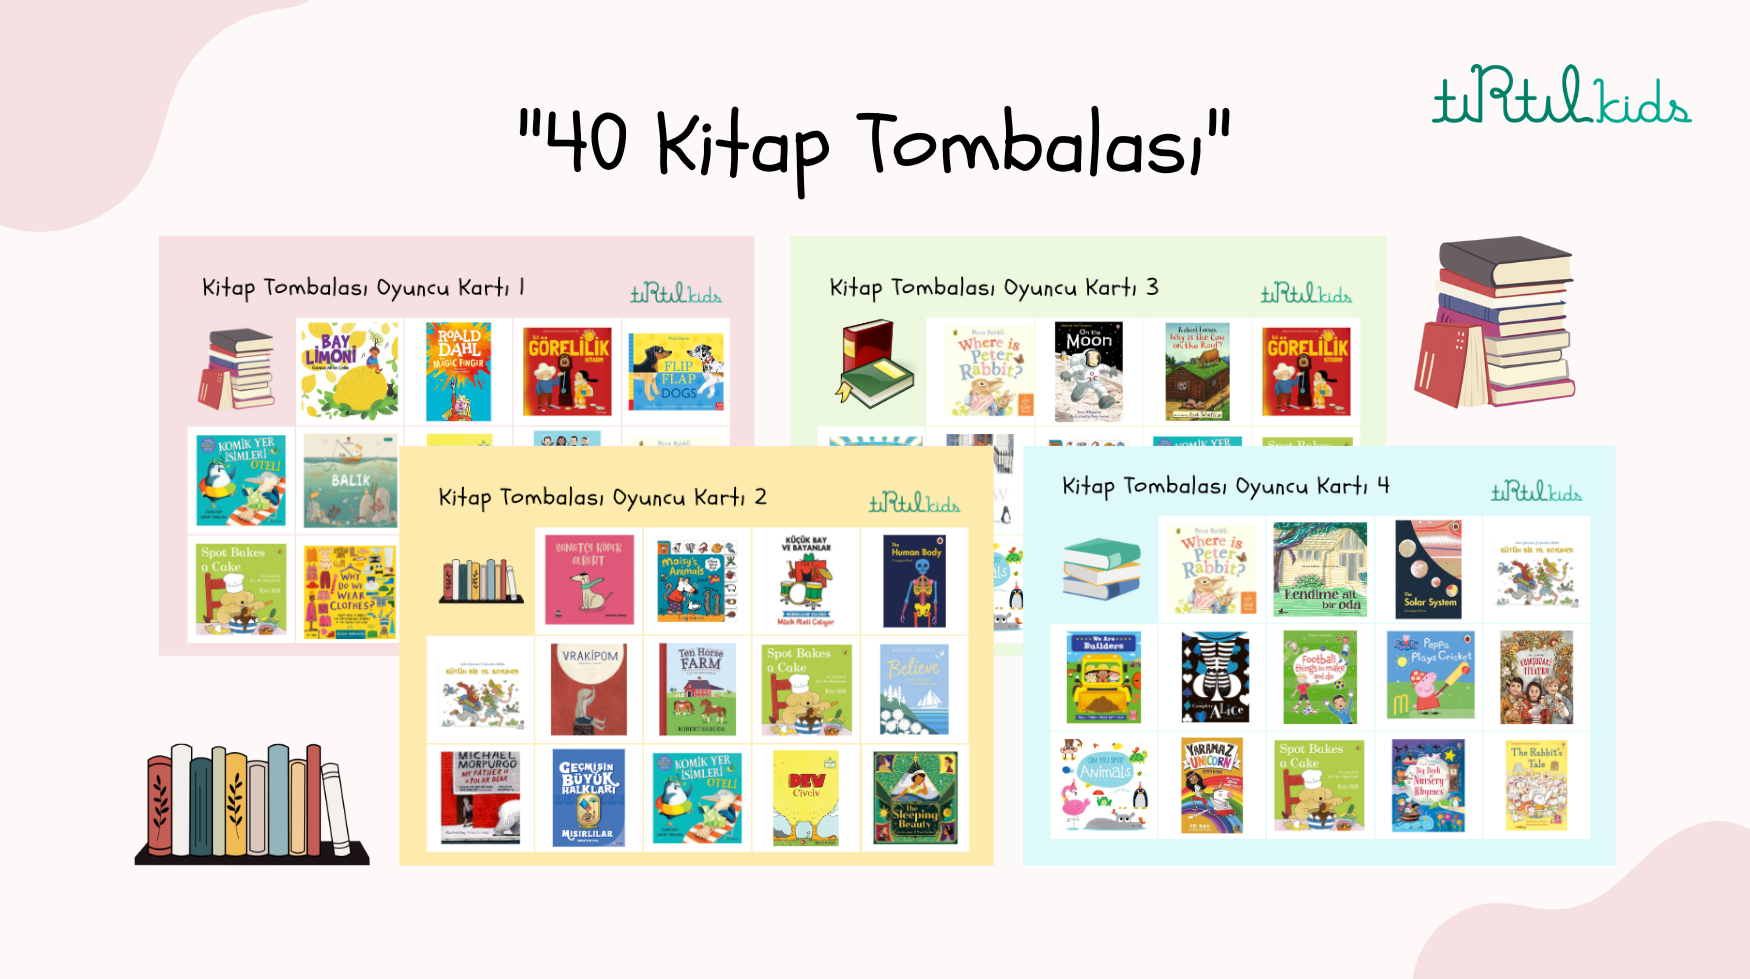 40 Kitap Tombalası - Tırtıl Kids'ten Dijital Hediye! 🐛